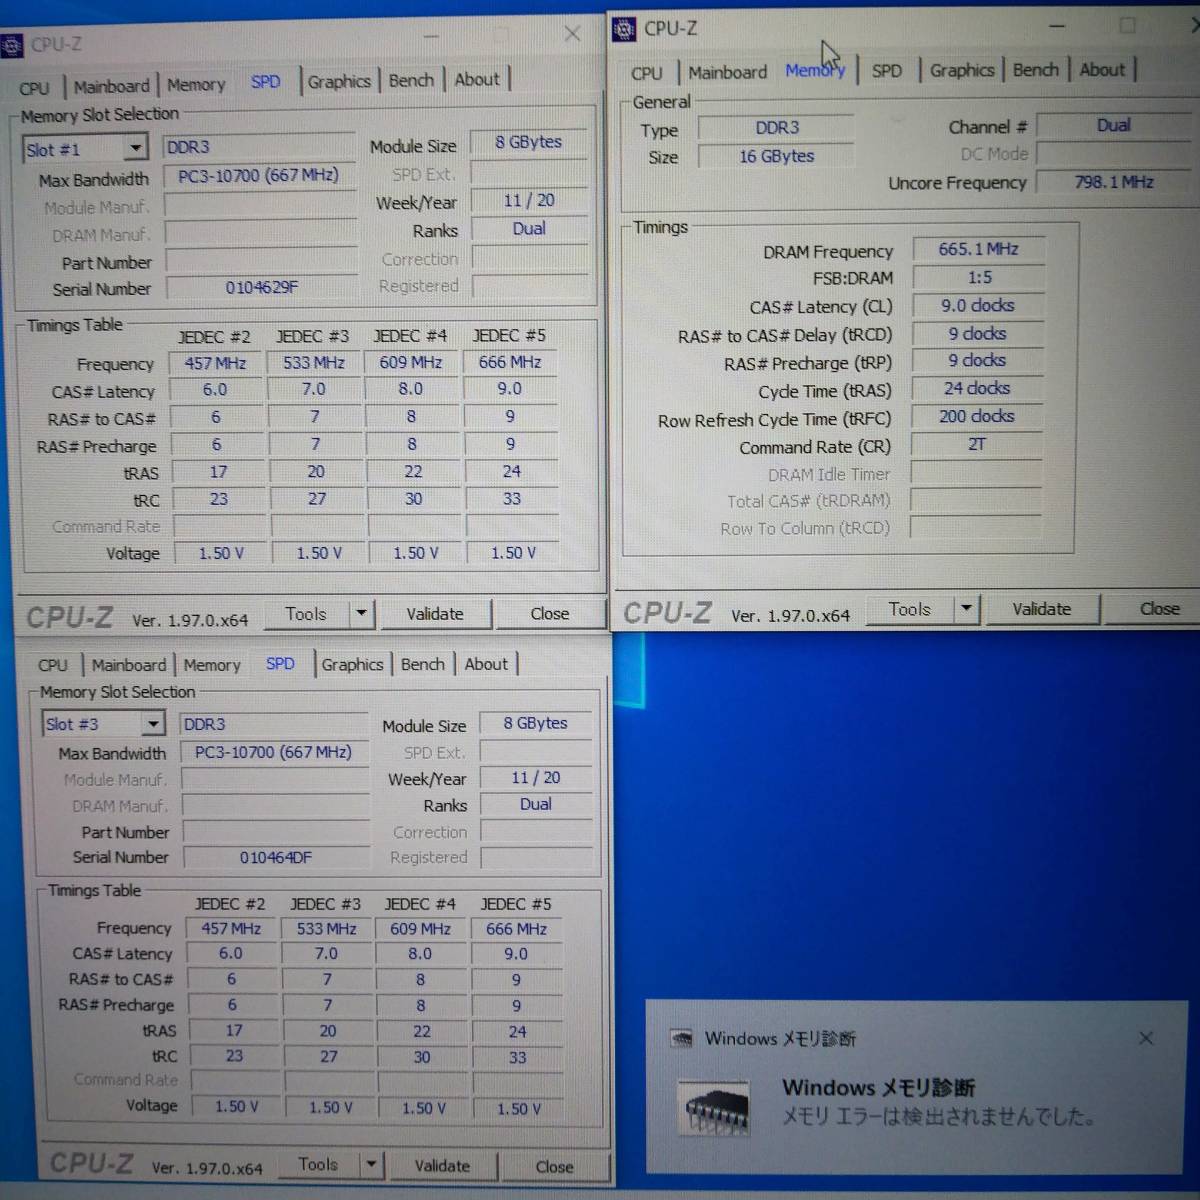 【中古】DDR3メモリ 16GB[8GB2枚組] TIMETEC 75TT13NU2R8-8G [DDR3-1600 PC3-12800]